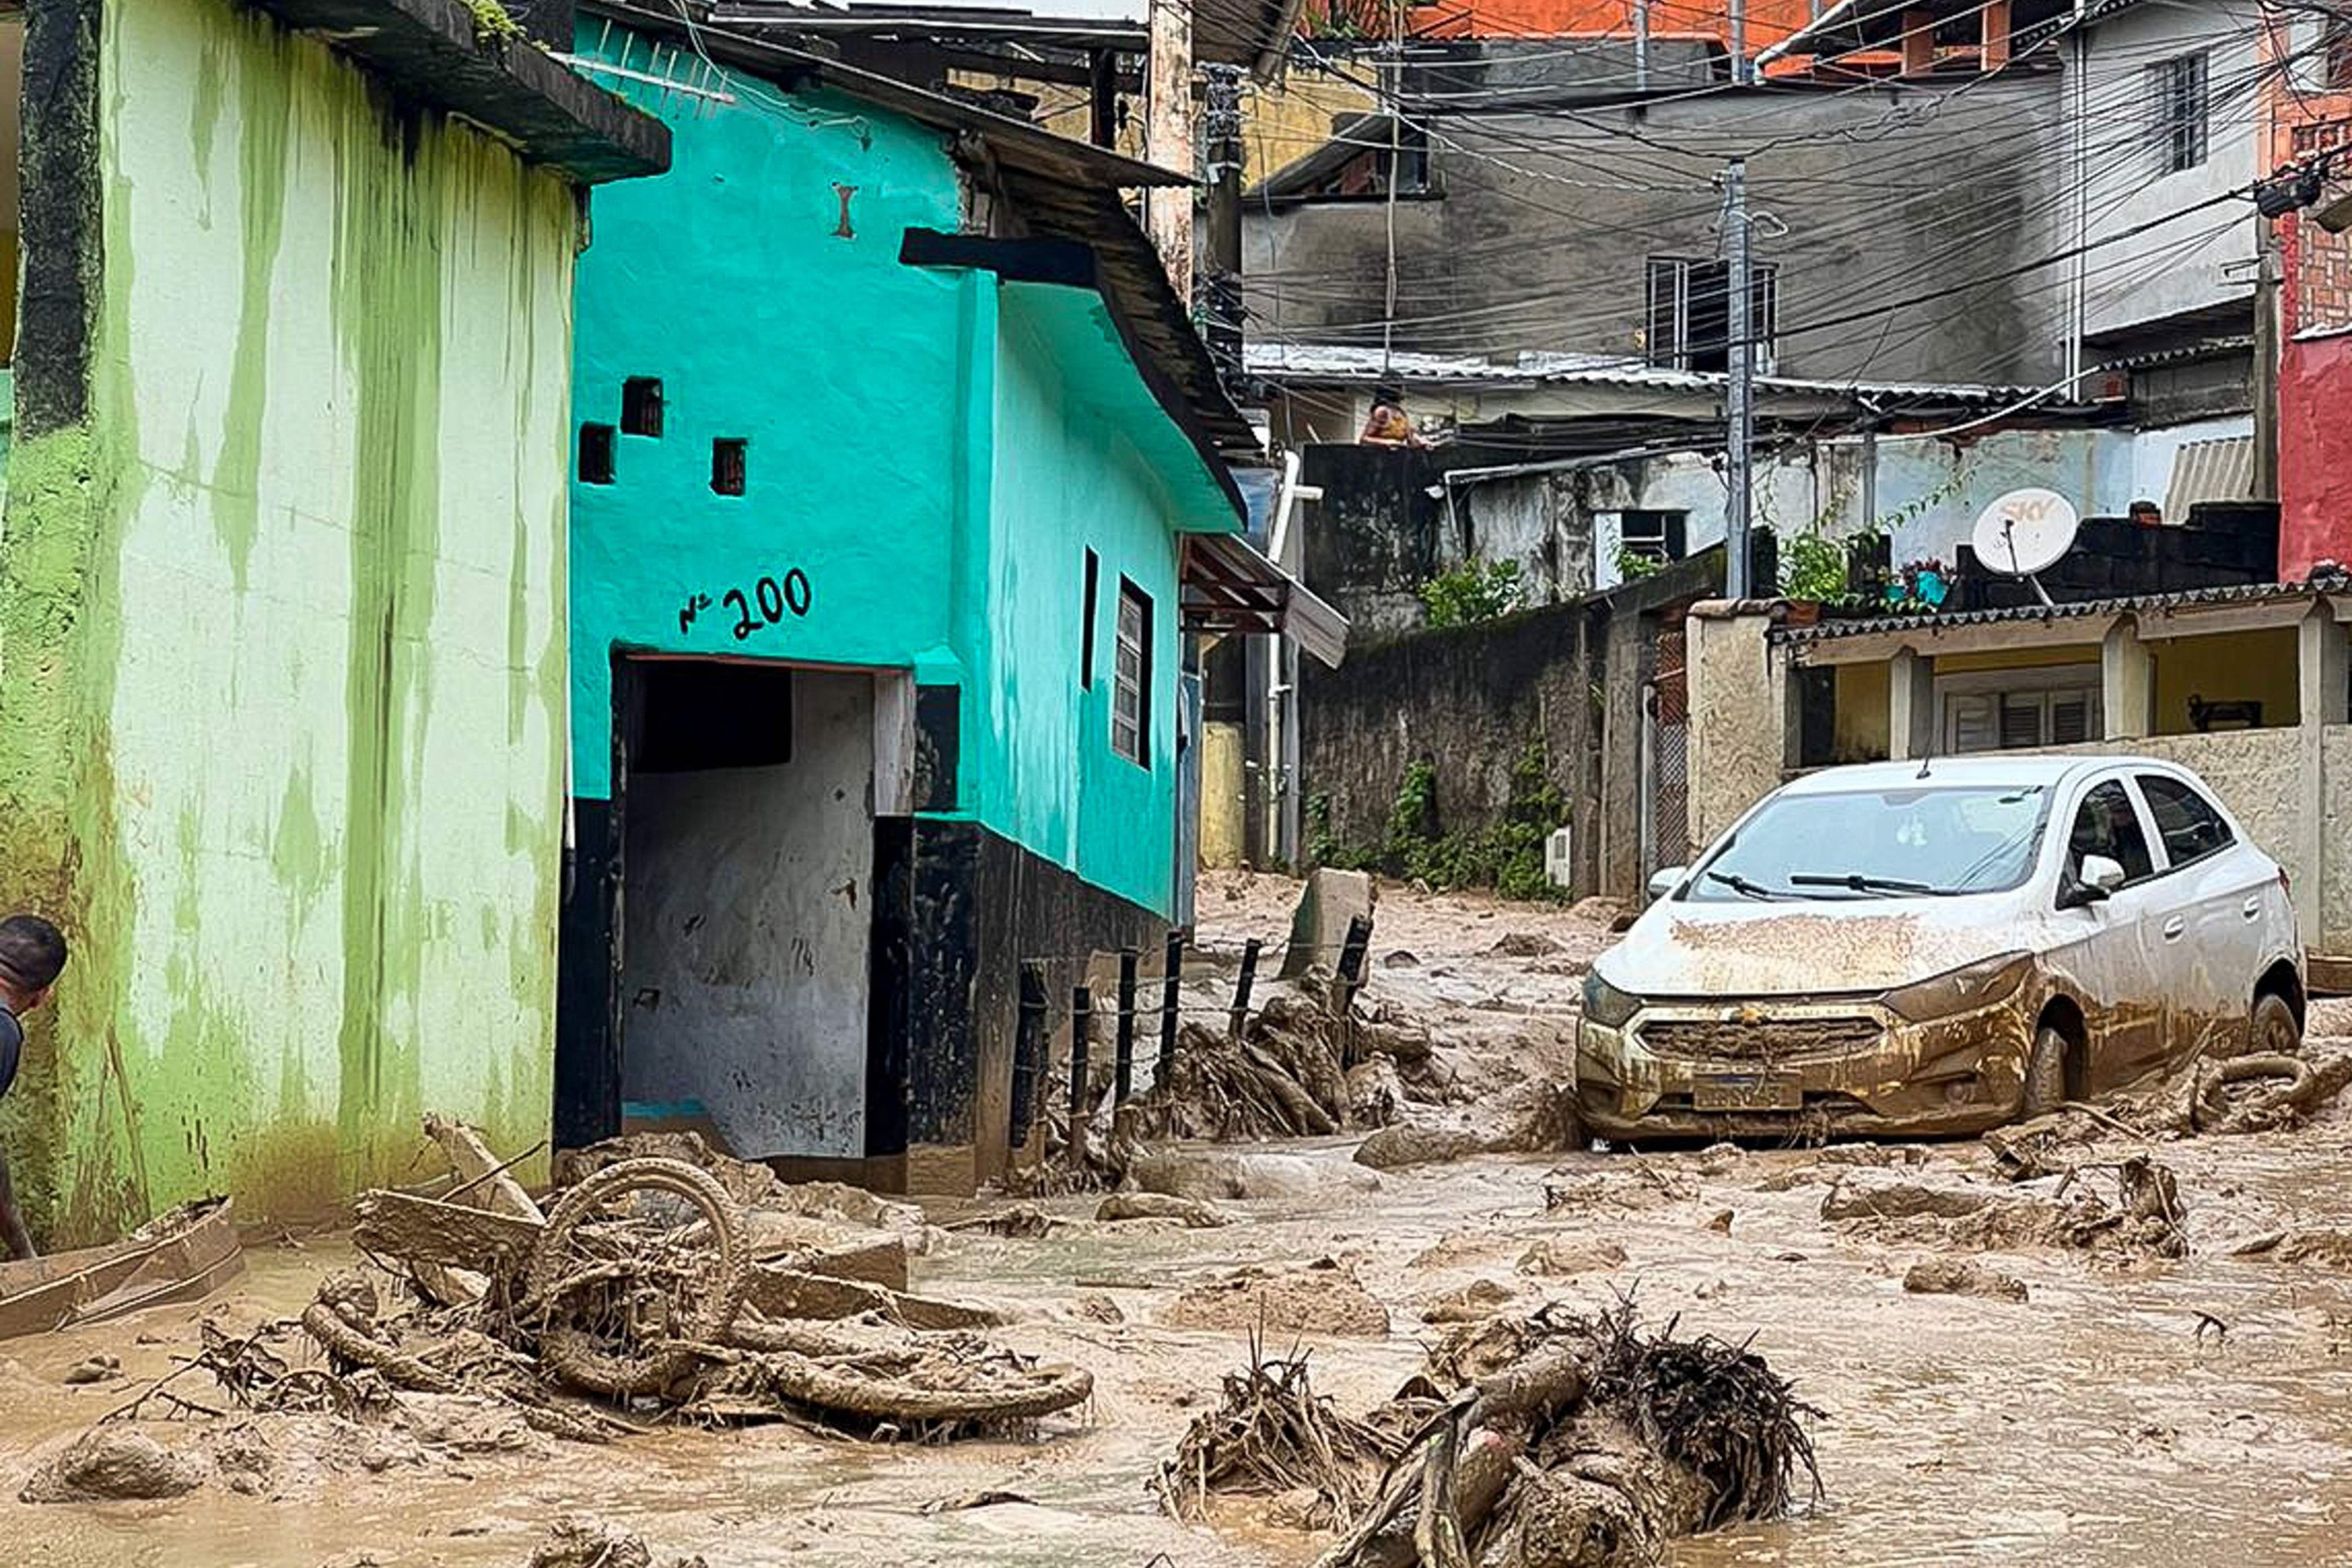 Flood, landslides kill at least 36 in Brazil